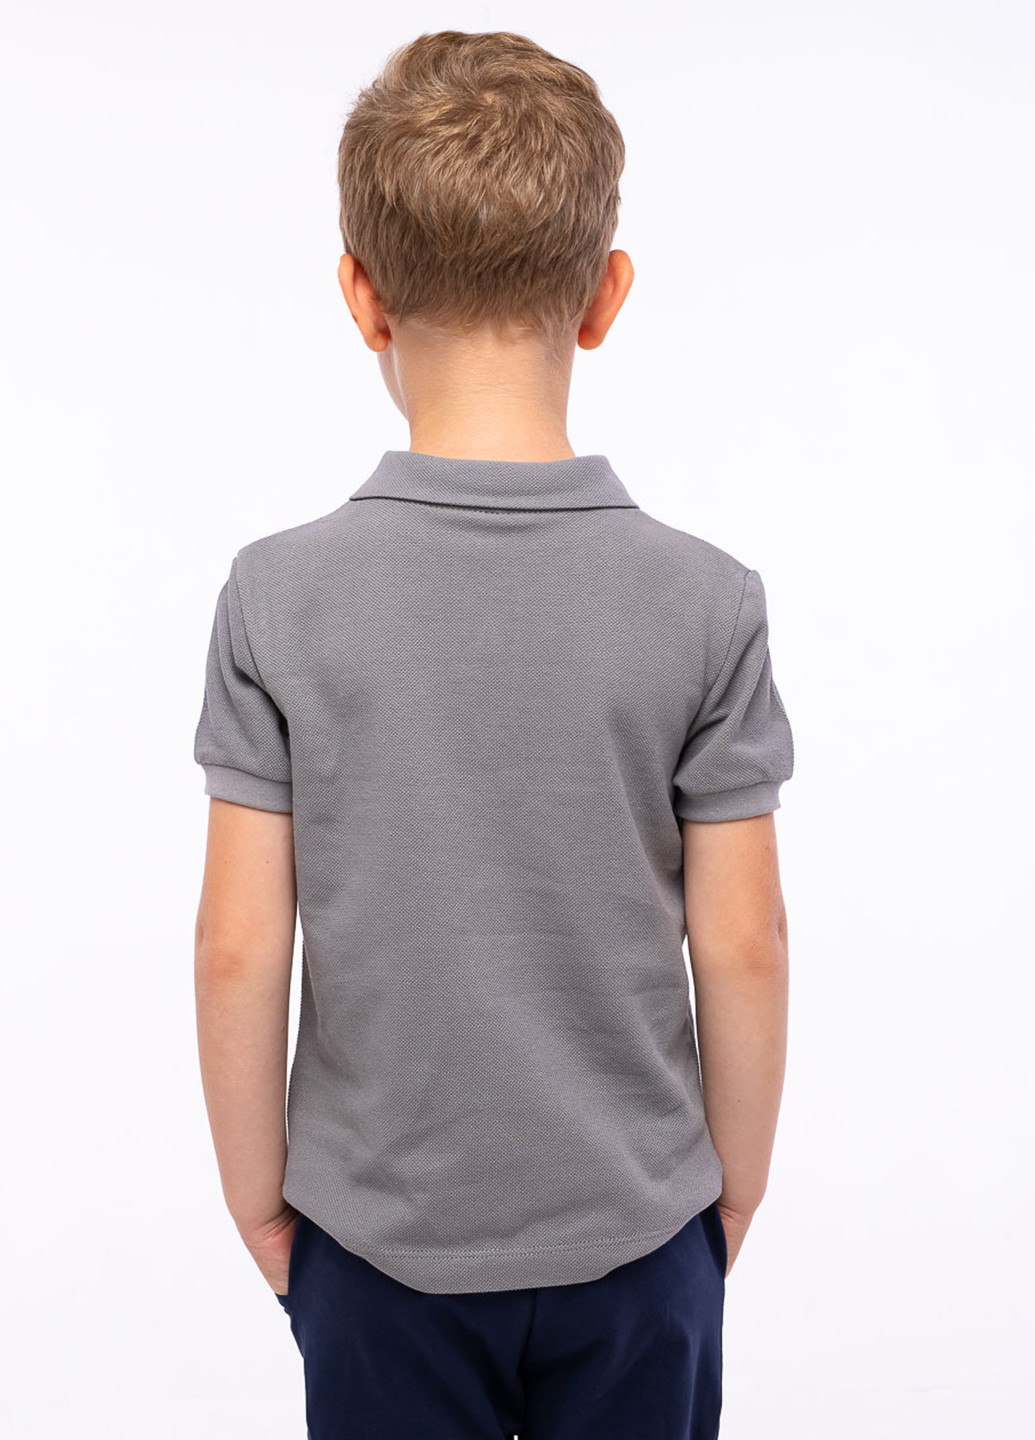 Серая детская футболка-поло для мальчика Vidoli однотонная